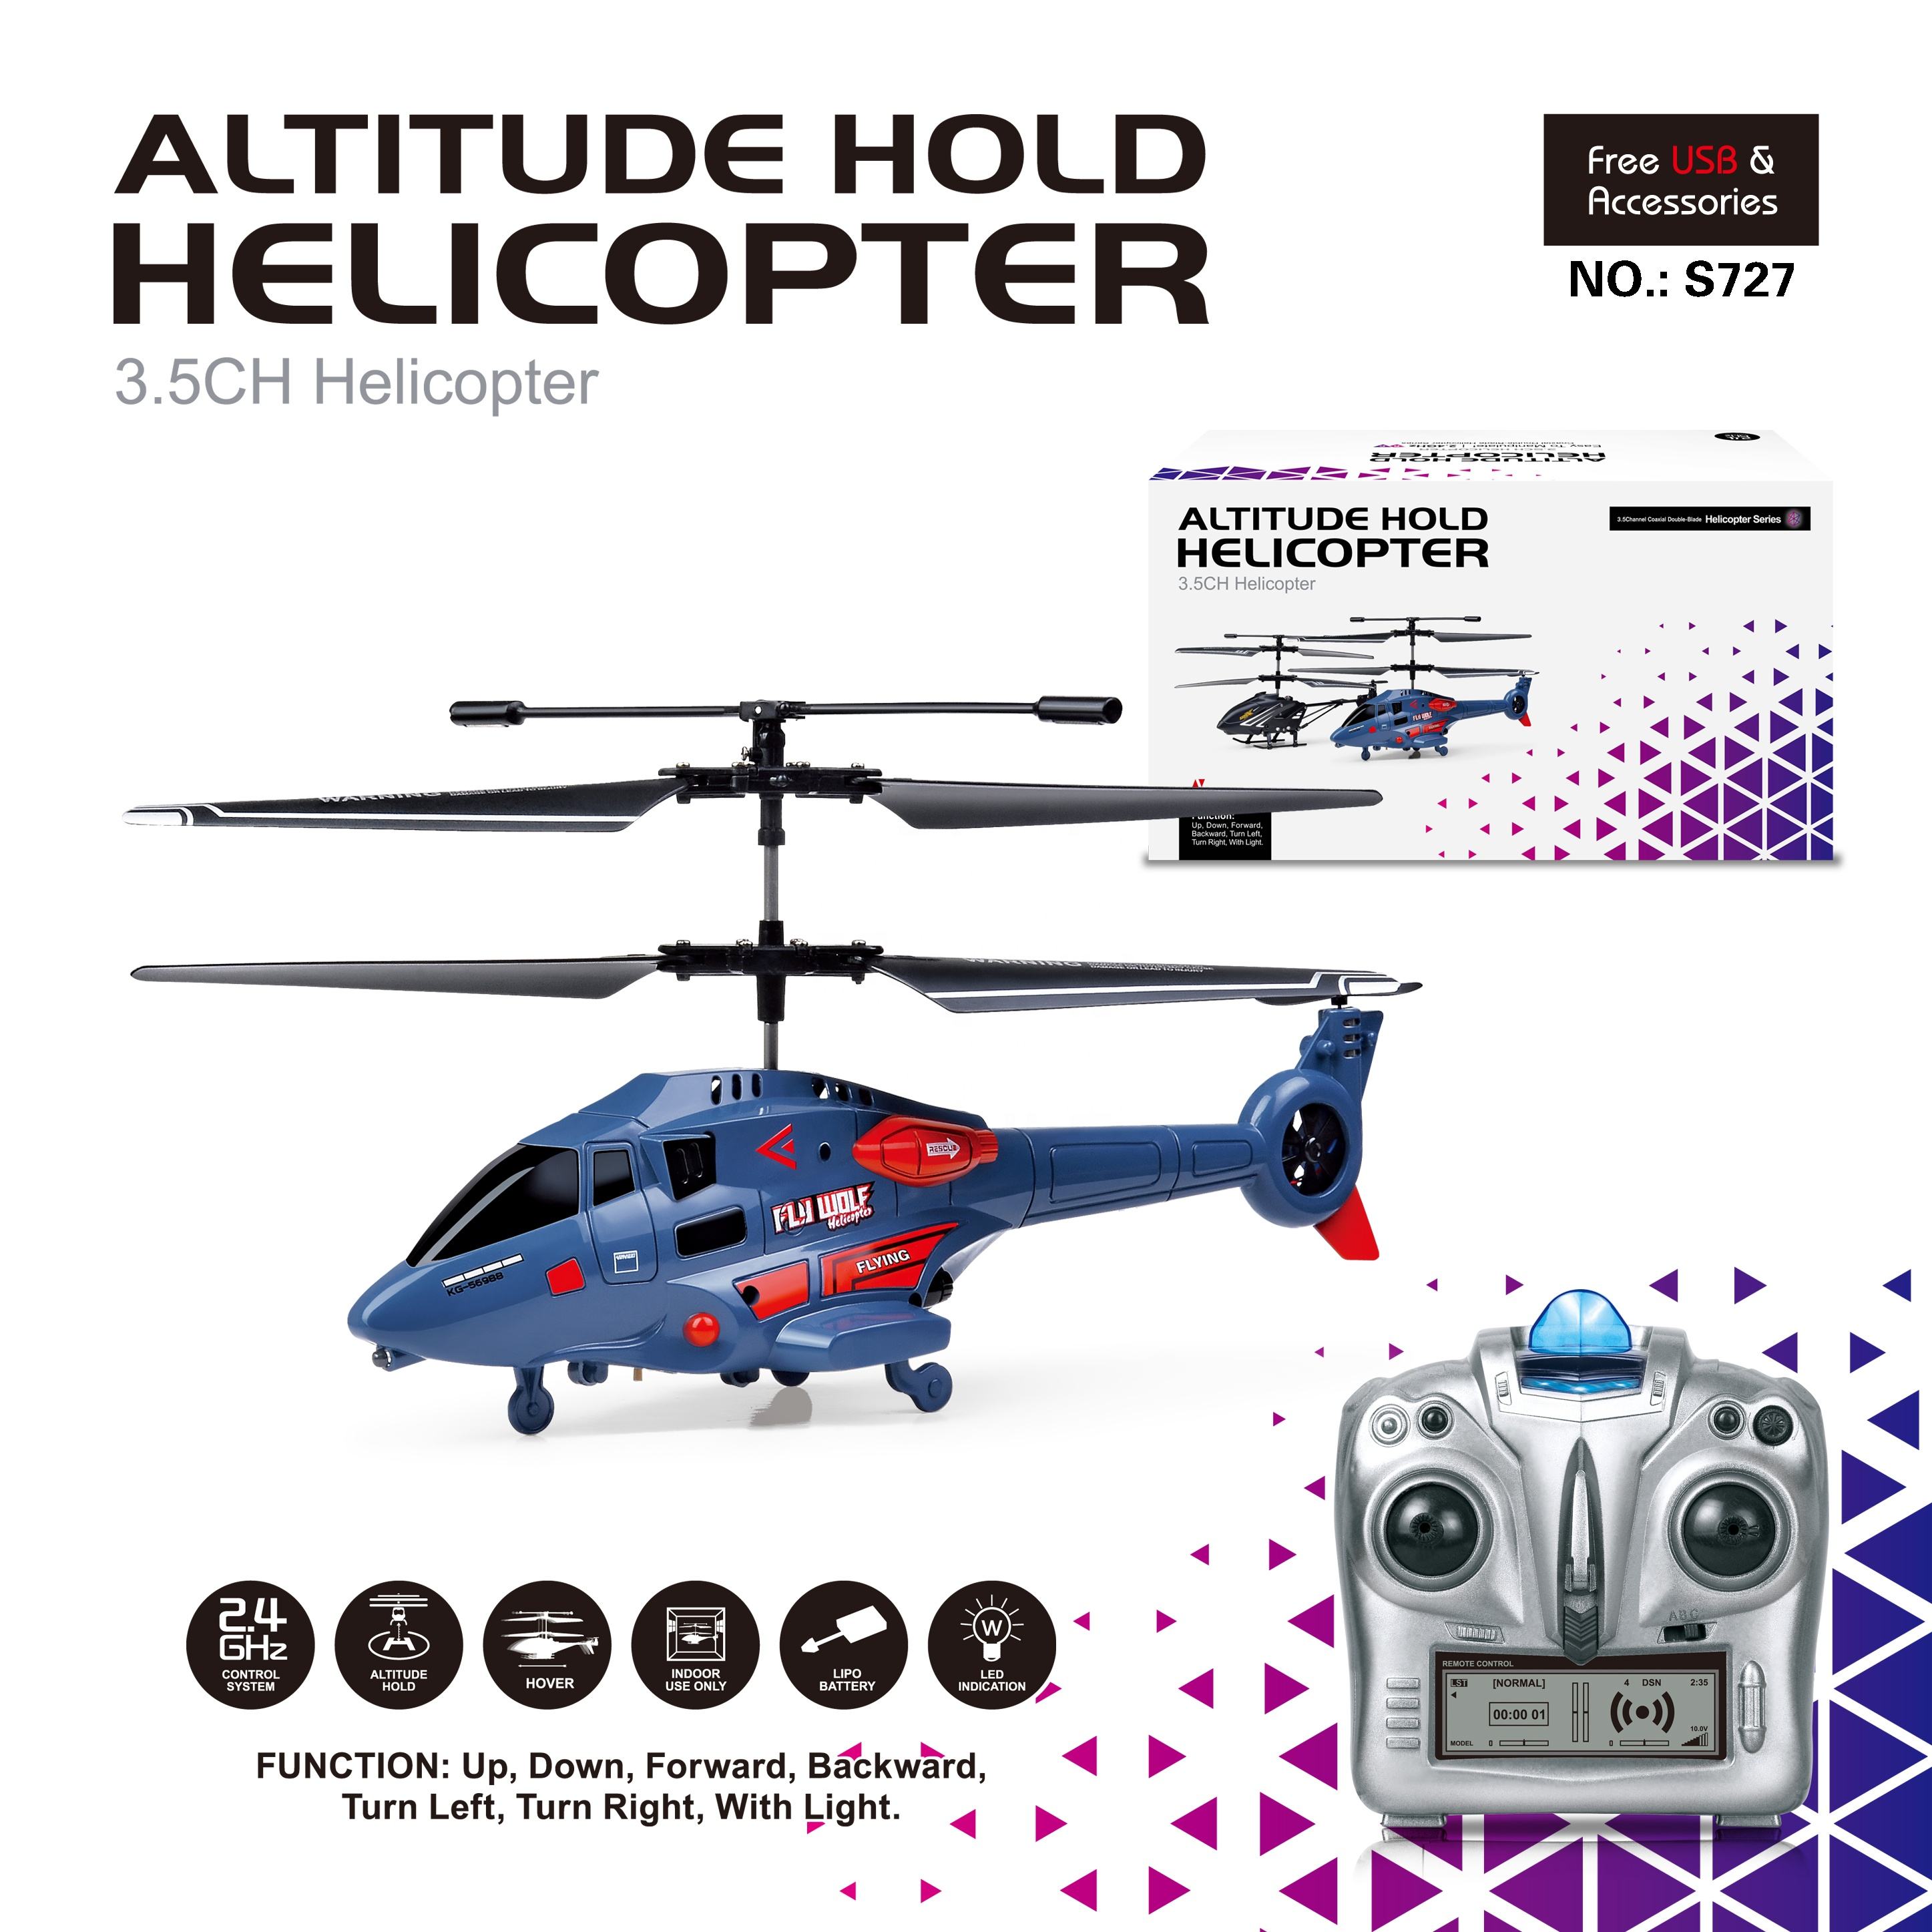 Pakyawan 2.4GHz Remote Control Altitude Hold 3.7V Baterya Indoor Flying Toy Vehicle RC Helicopter Para sa Mga Bata